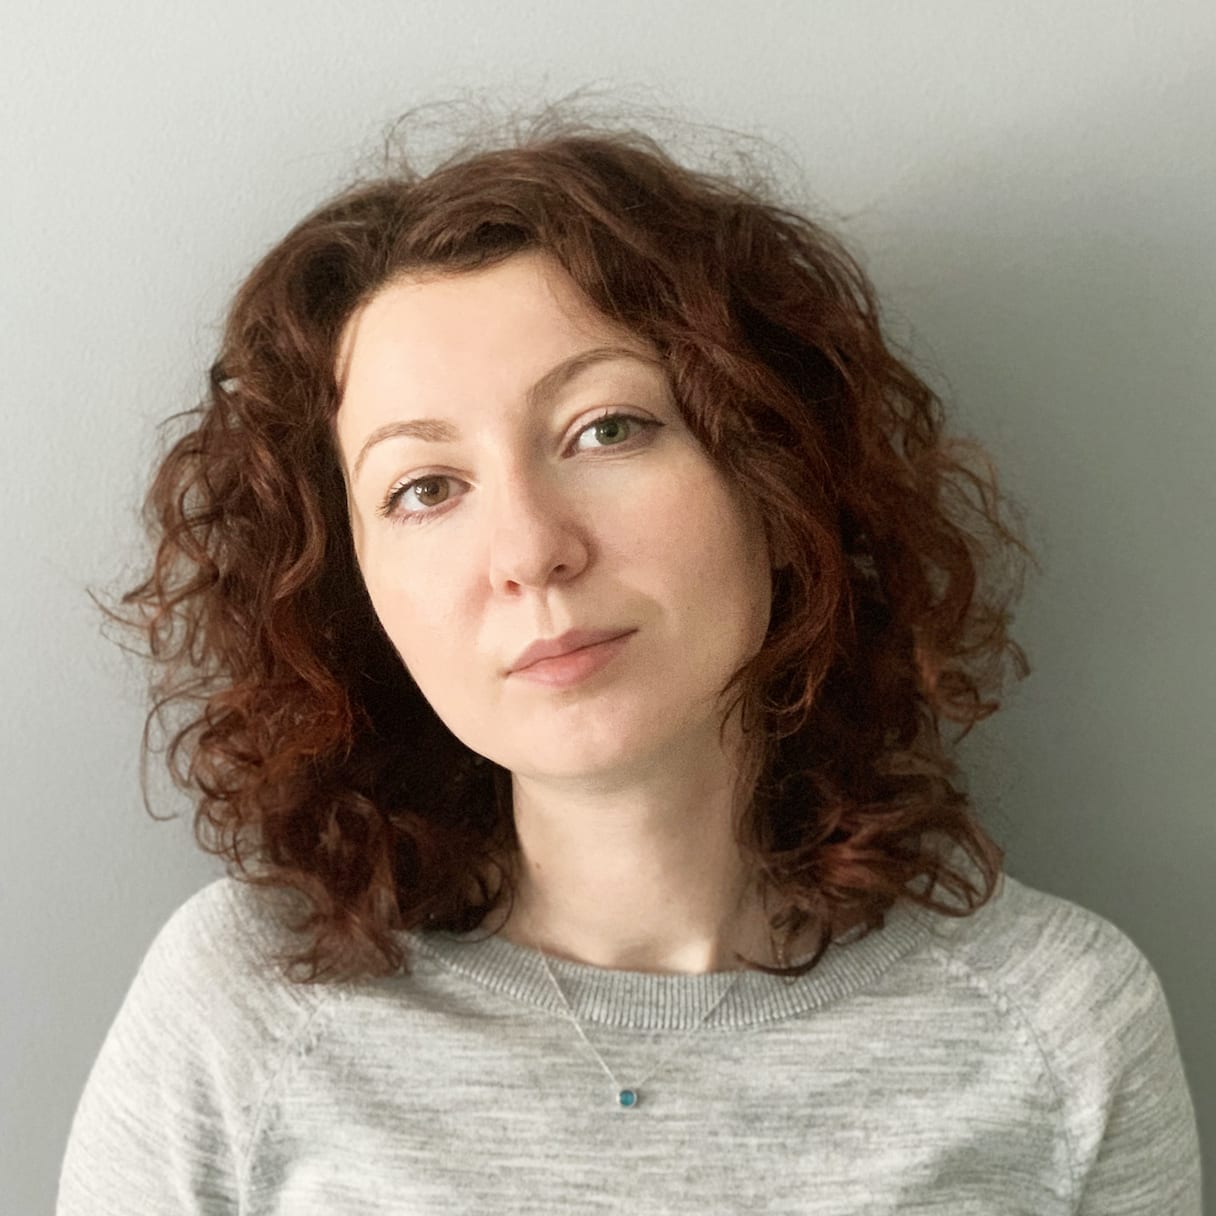 Олена Гаврилюк, арт-директорка брендингового агентства Dozen